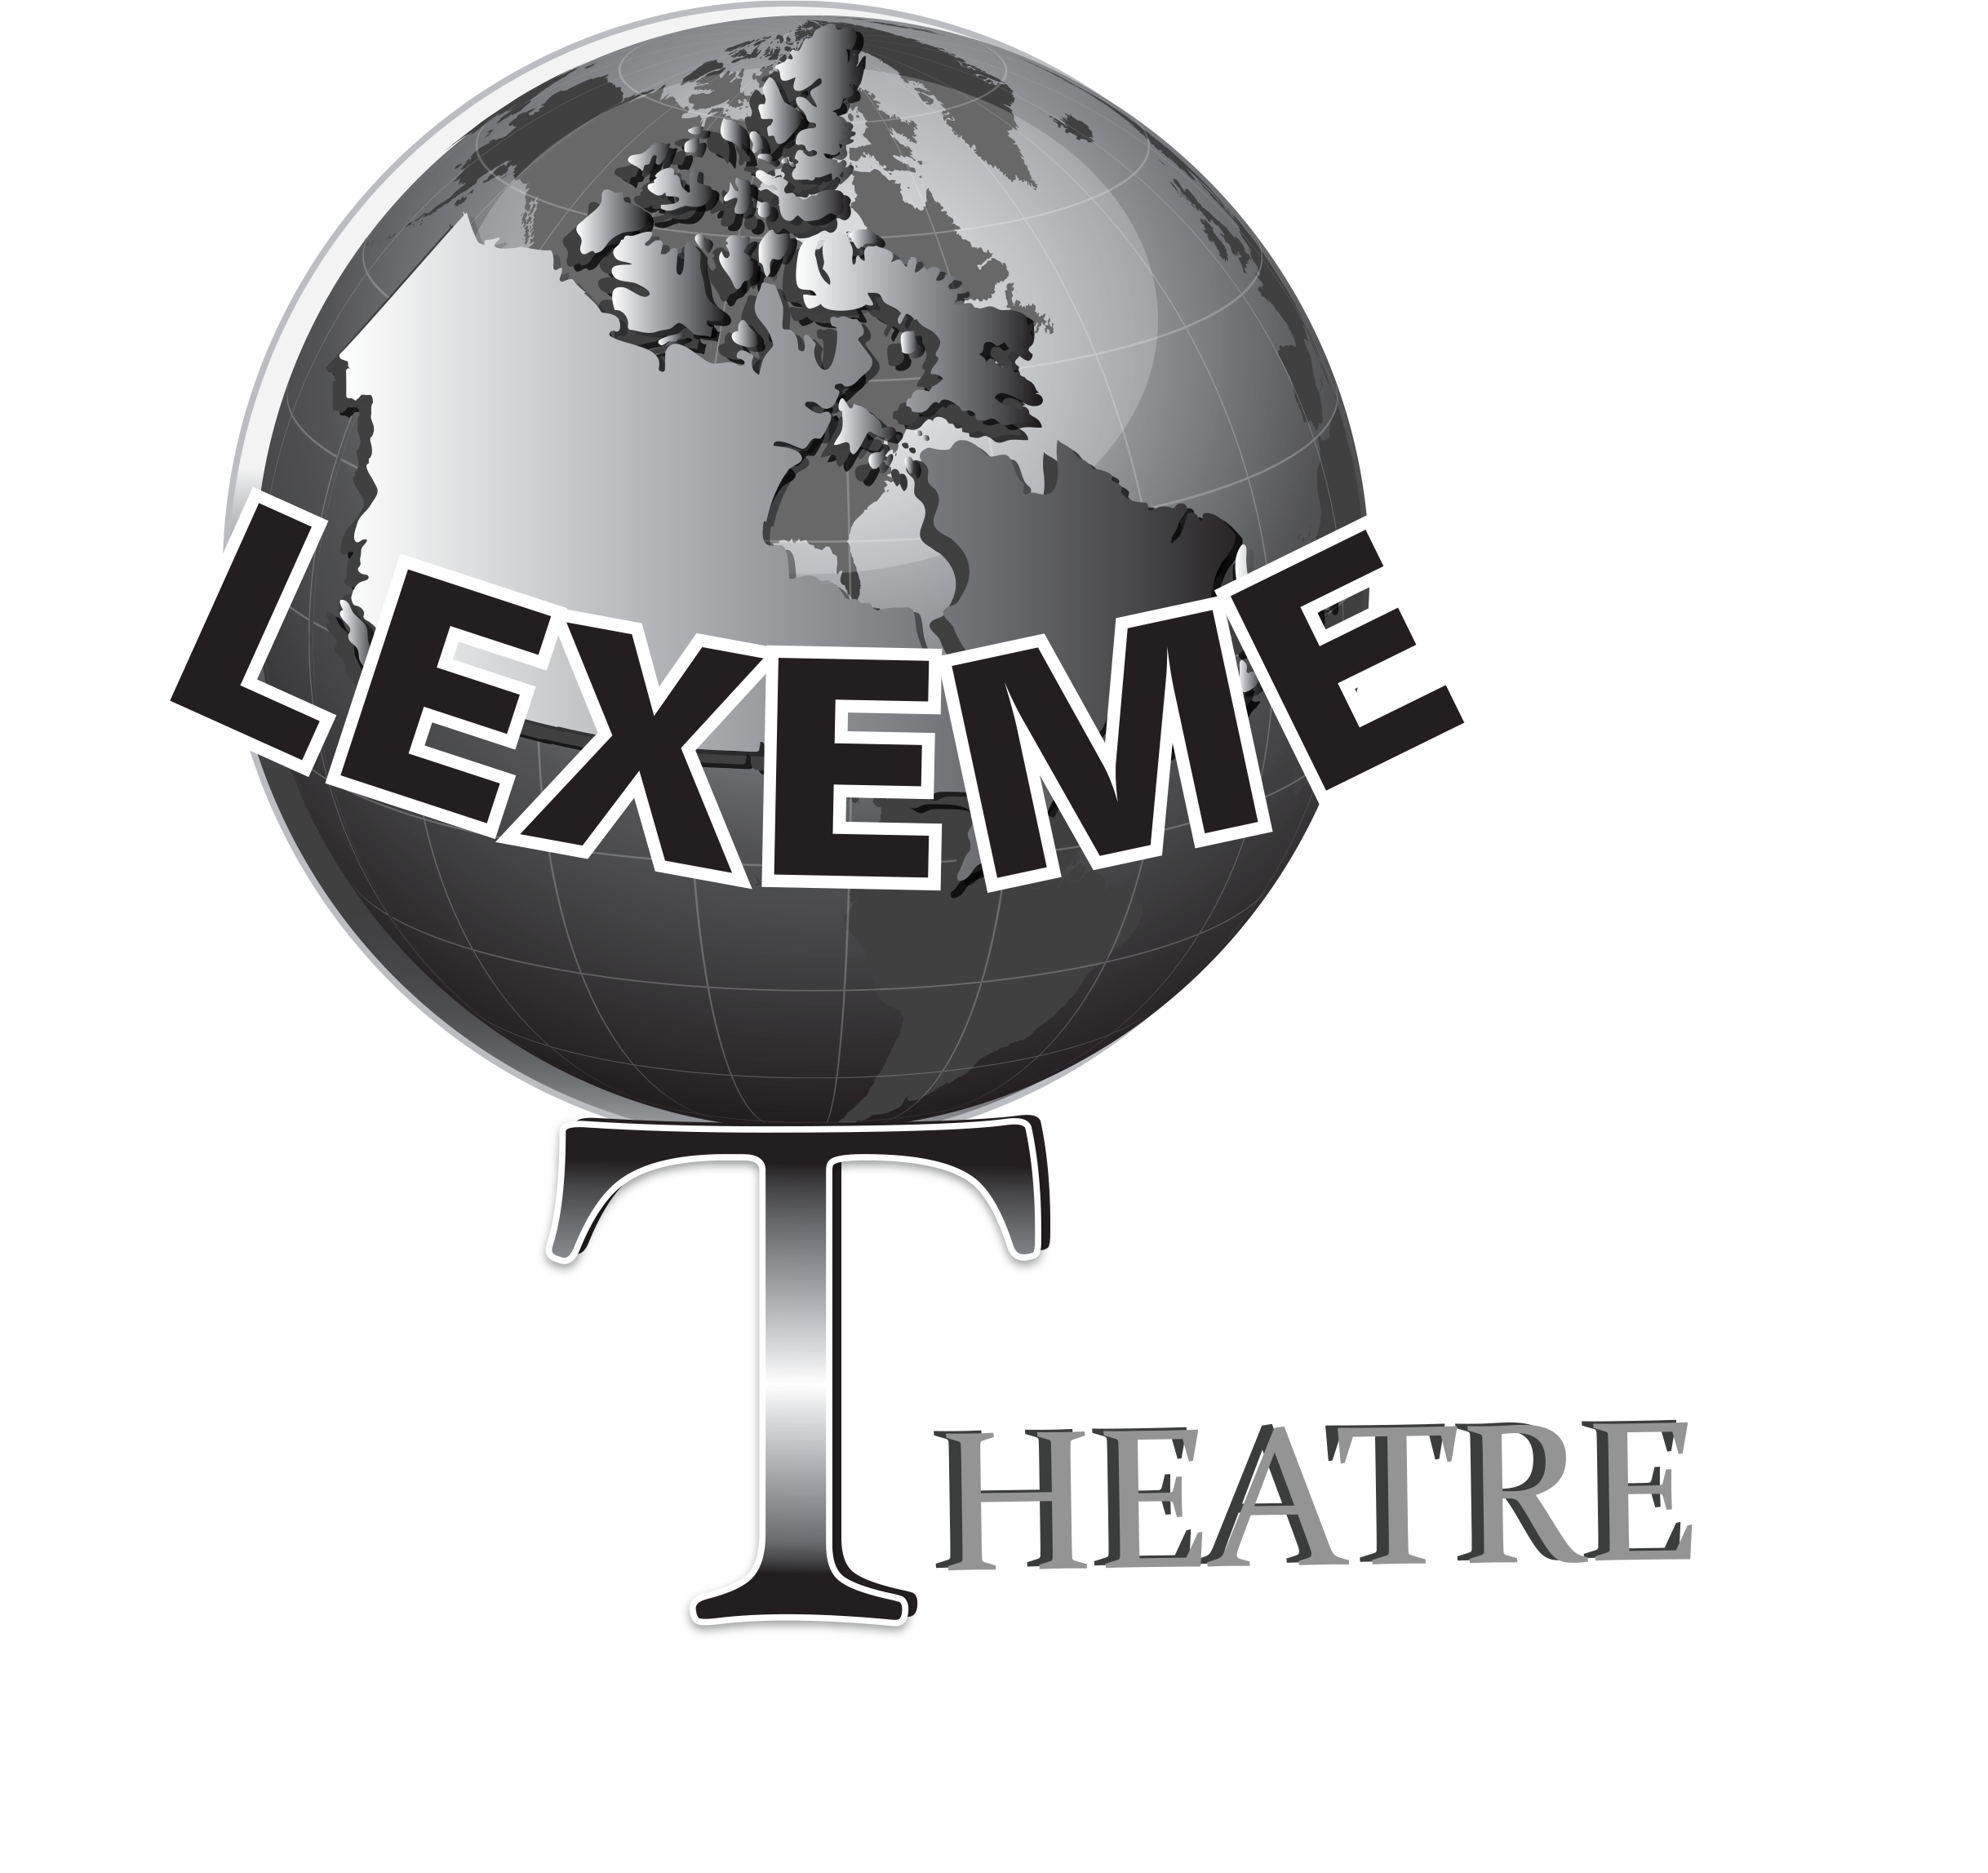 Lexeme Theatre